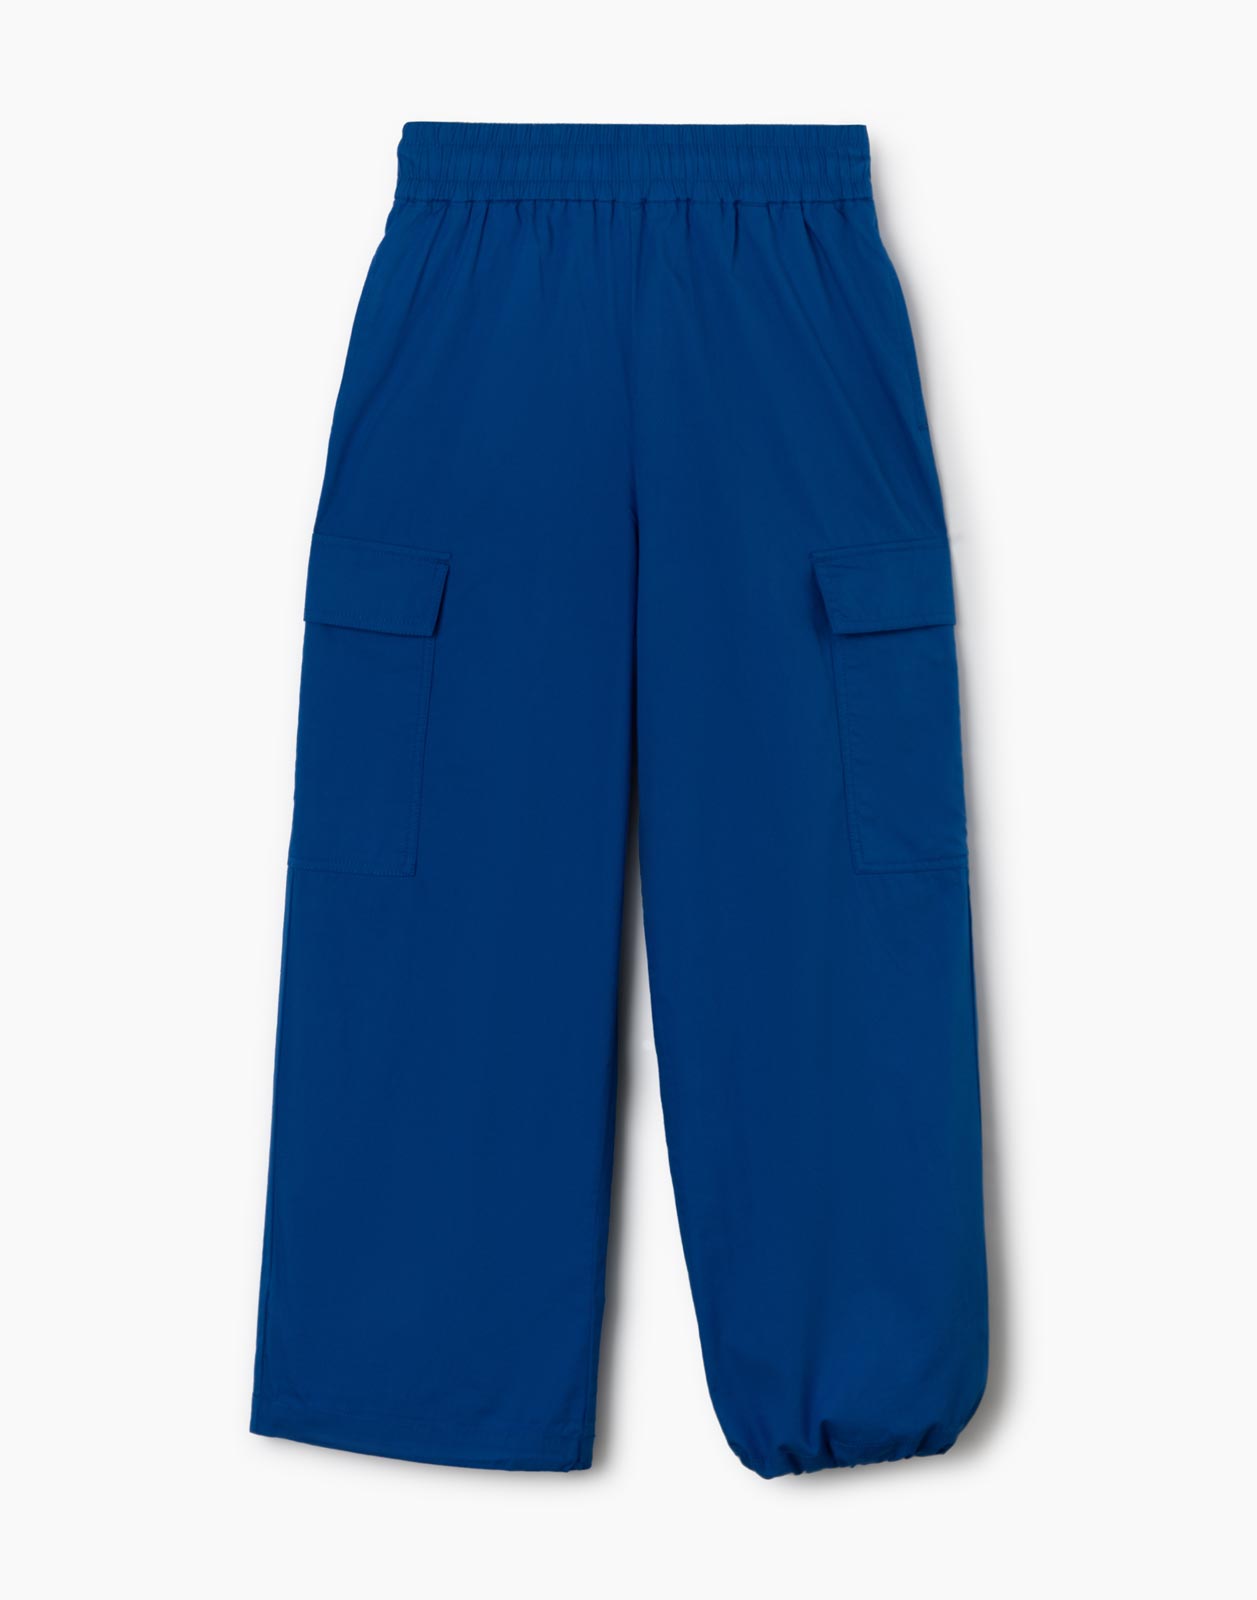 Синие брюки-трансформеры с карманами карго для девочки р.122